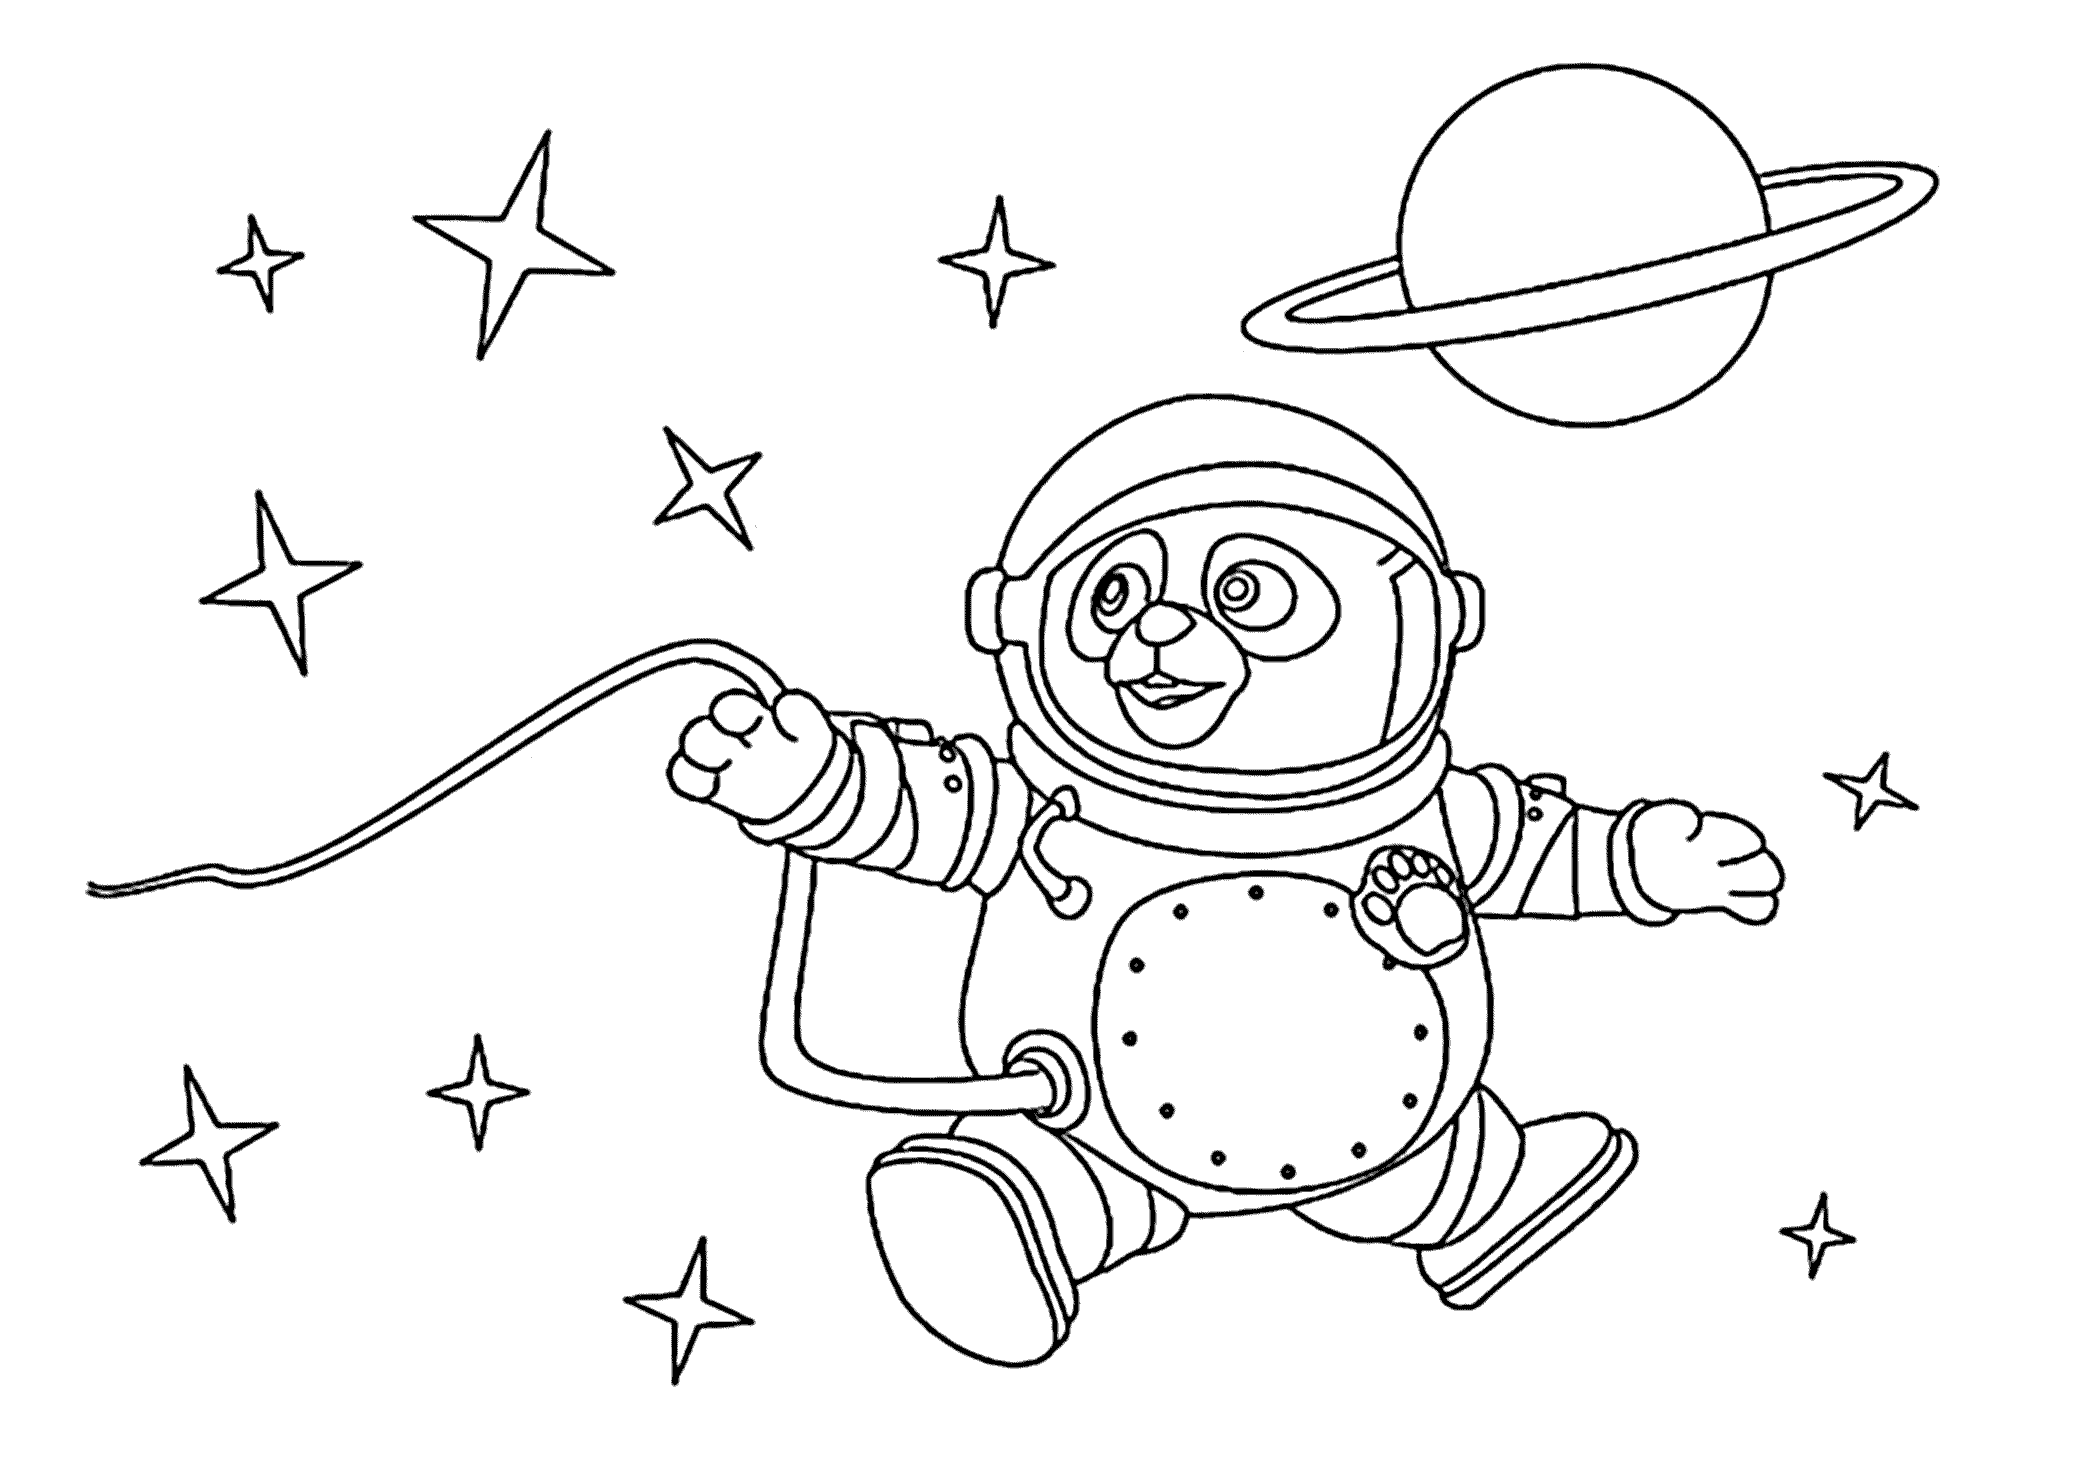 Раскраска про космос для детей 3 лет. Раскраска. В космосе. Космос раскраска для детей. Раскраски для детей космас. Раскраска для малышей. Космос.